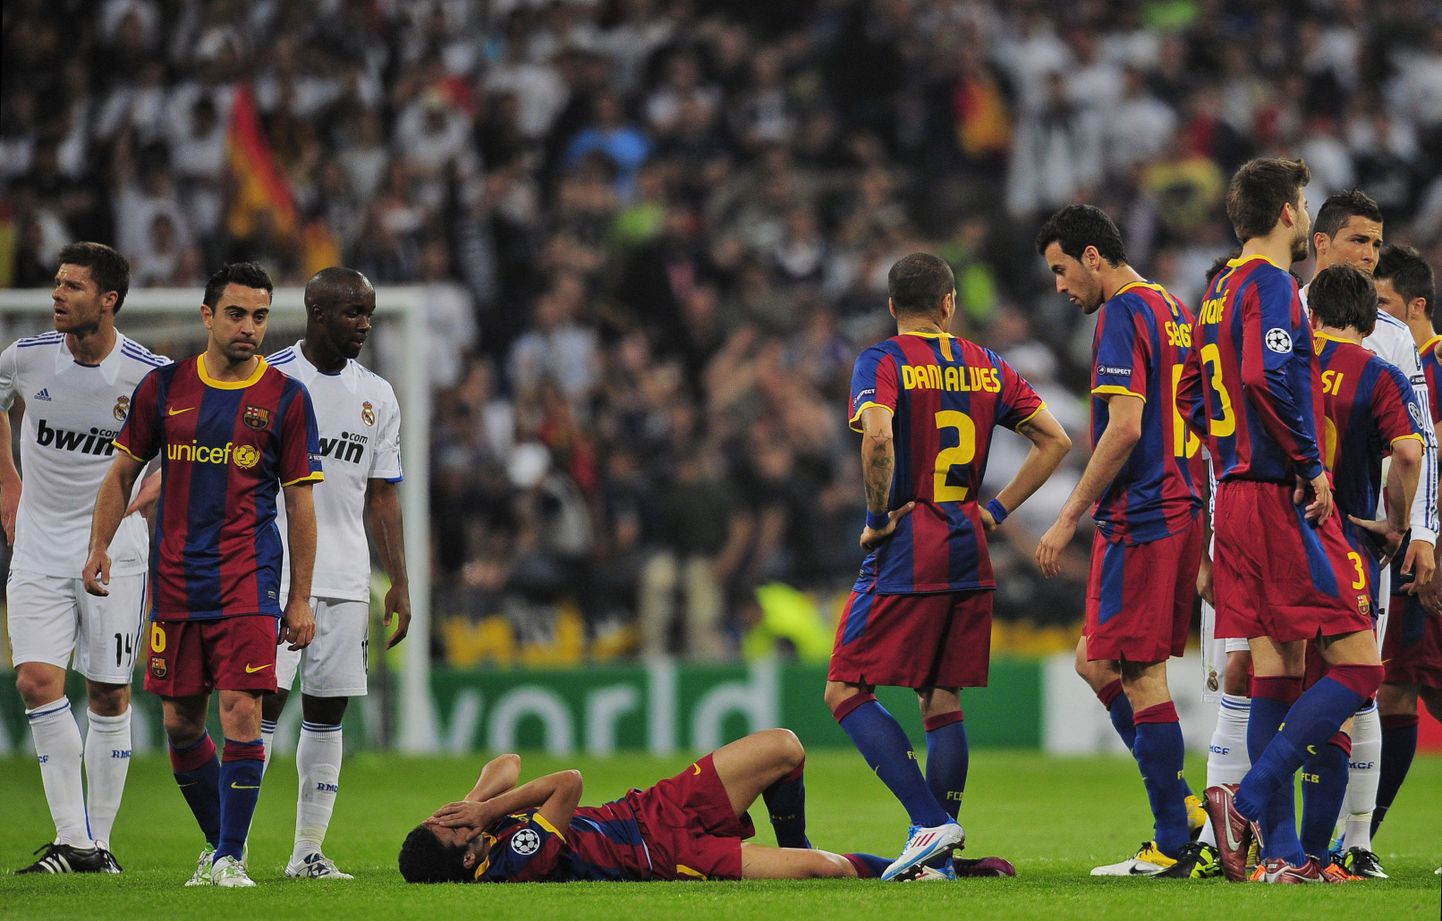 FC Barcelona mängija Pedro on kukkunud pikali. Pärast mängu sai Pedro kuulda ka kriitikat, kuna ta kukkus kohtumises Reali vastu liiga kergelt.